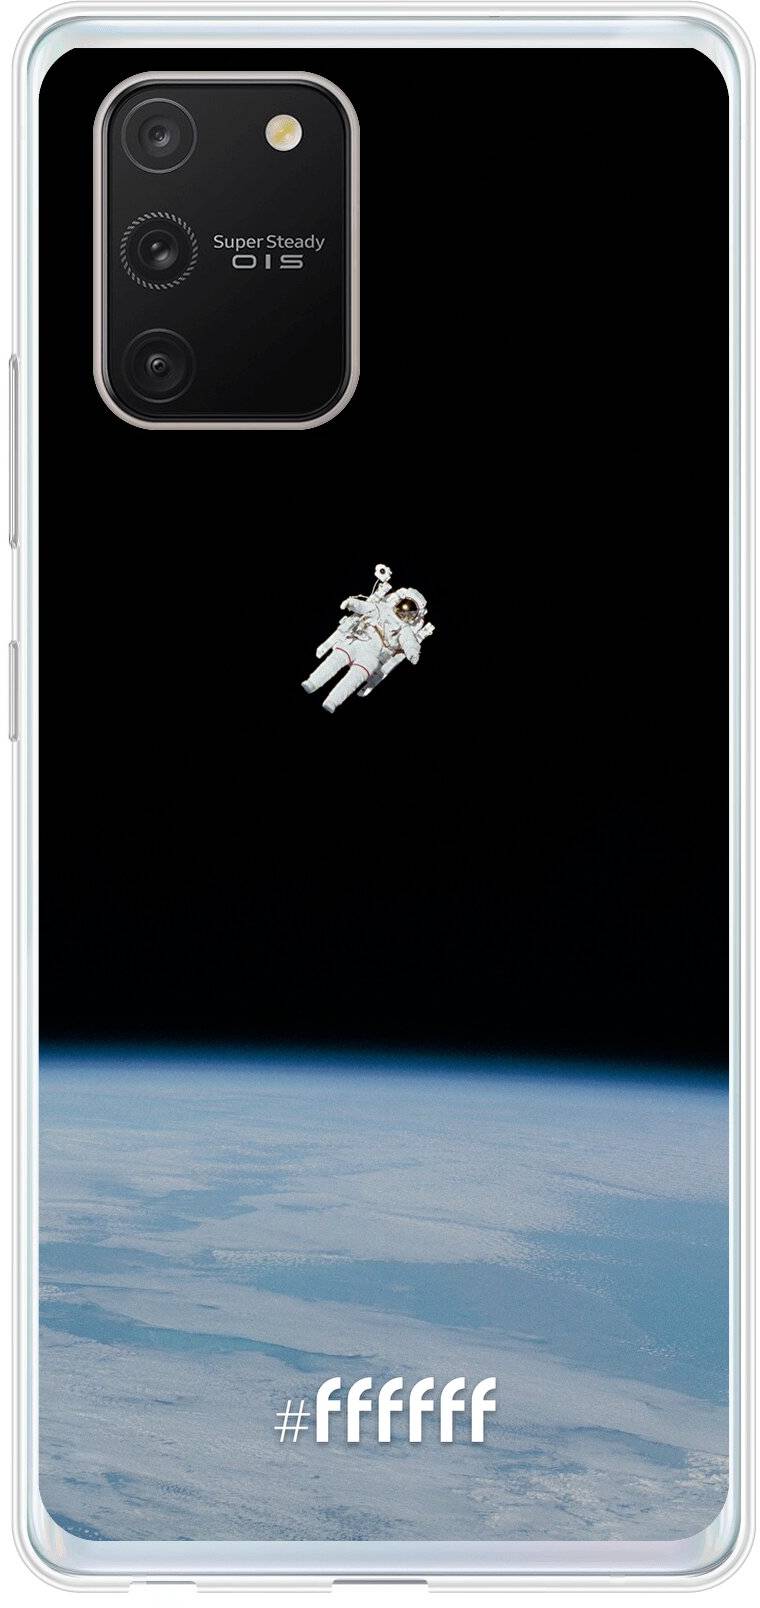 Spacewalk Galaxy S10 Lite